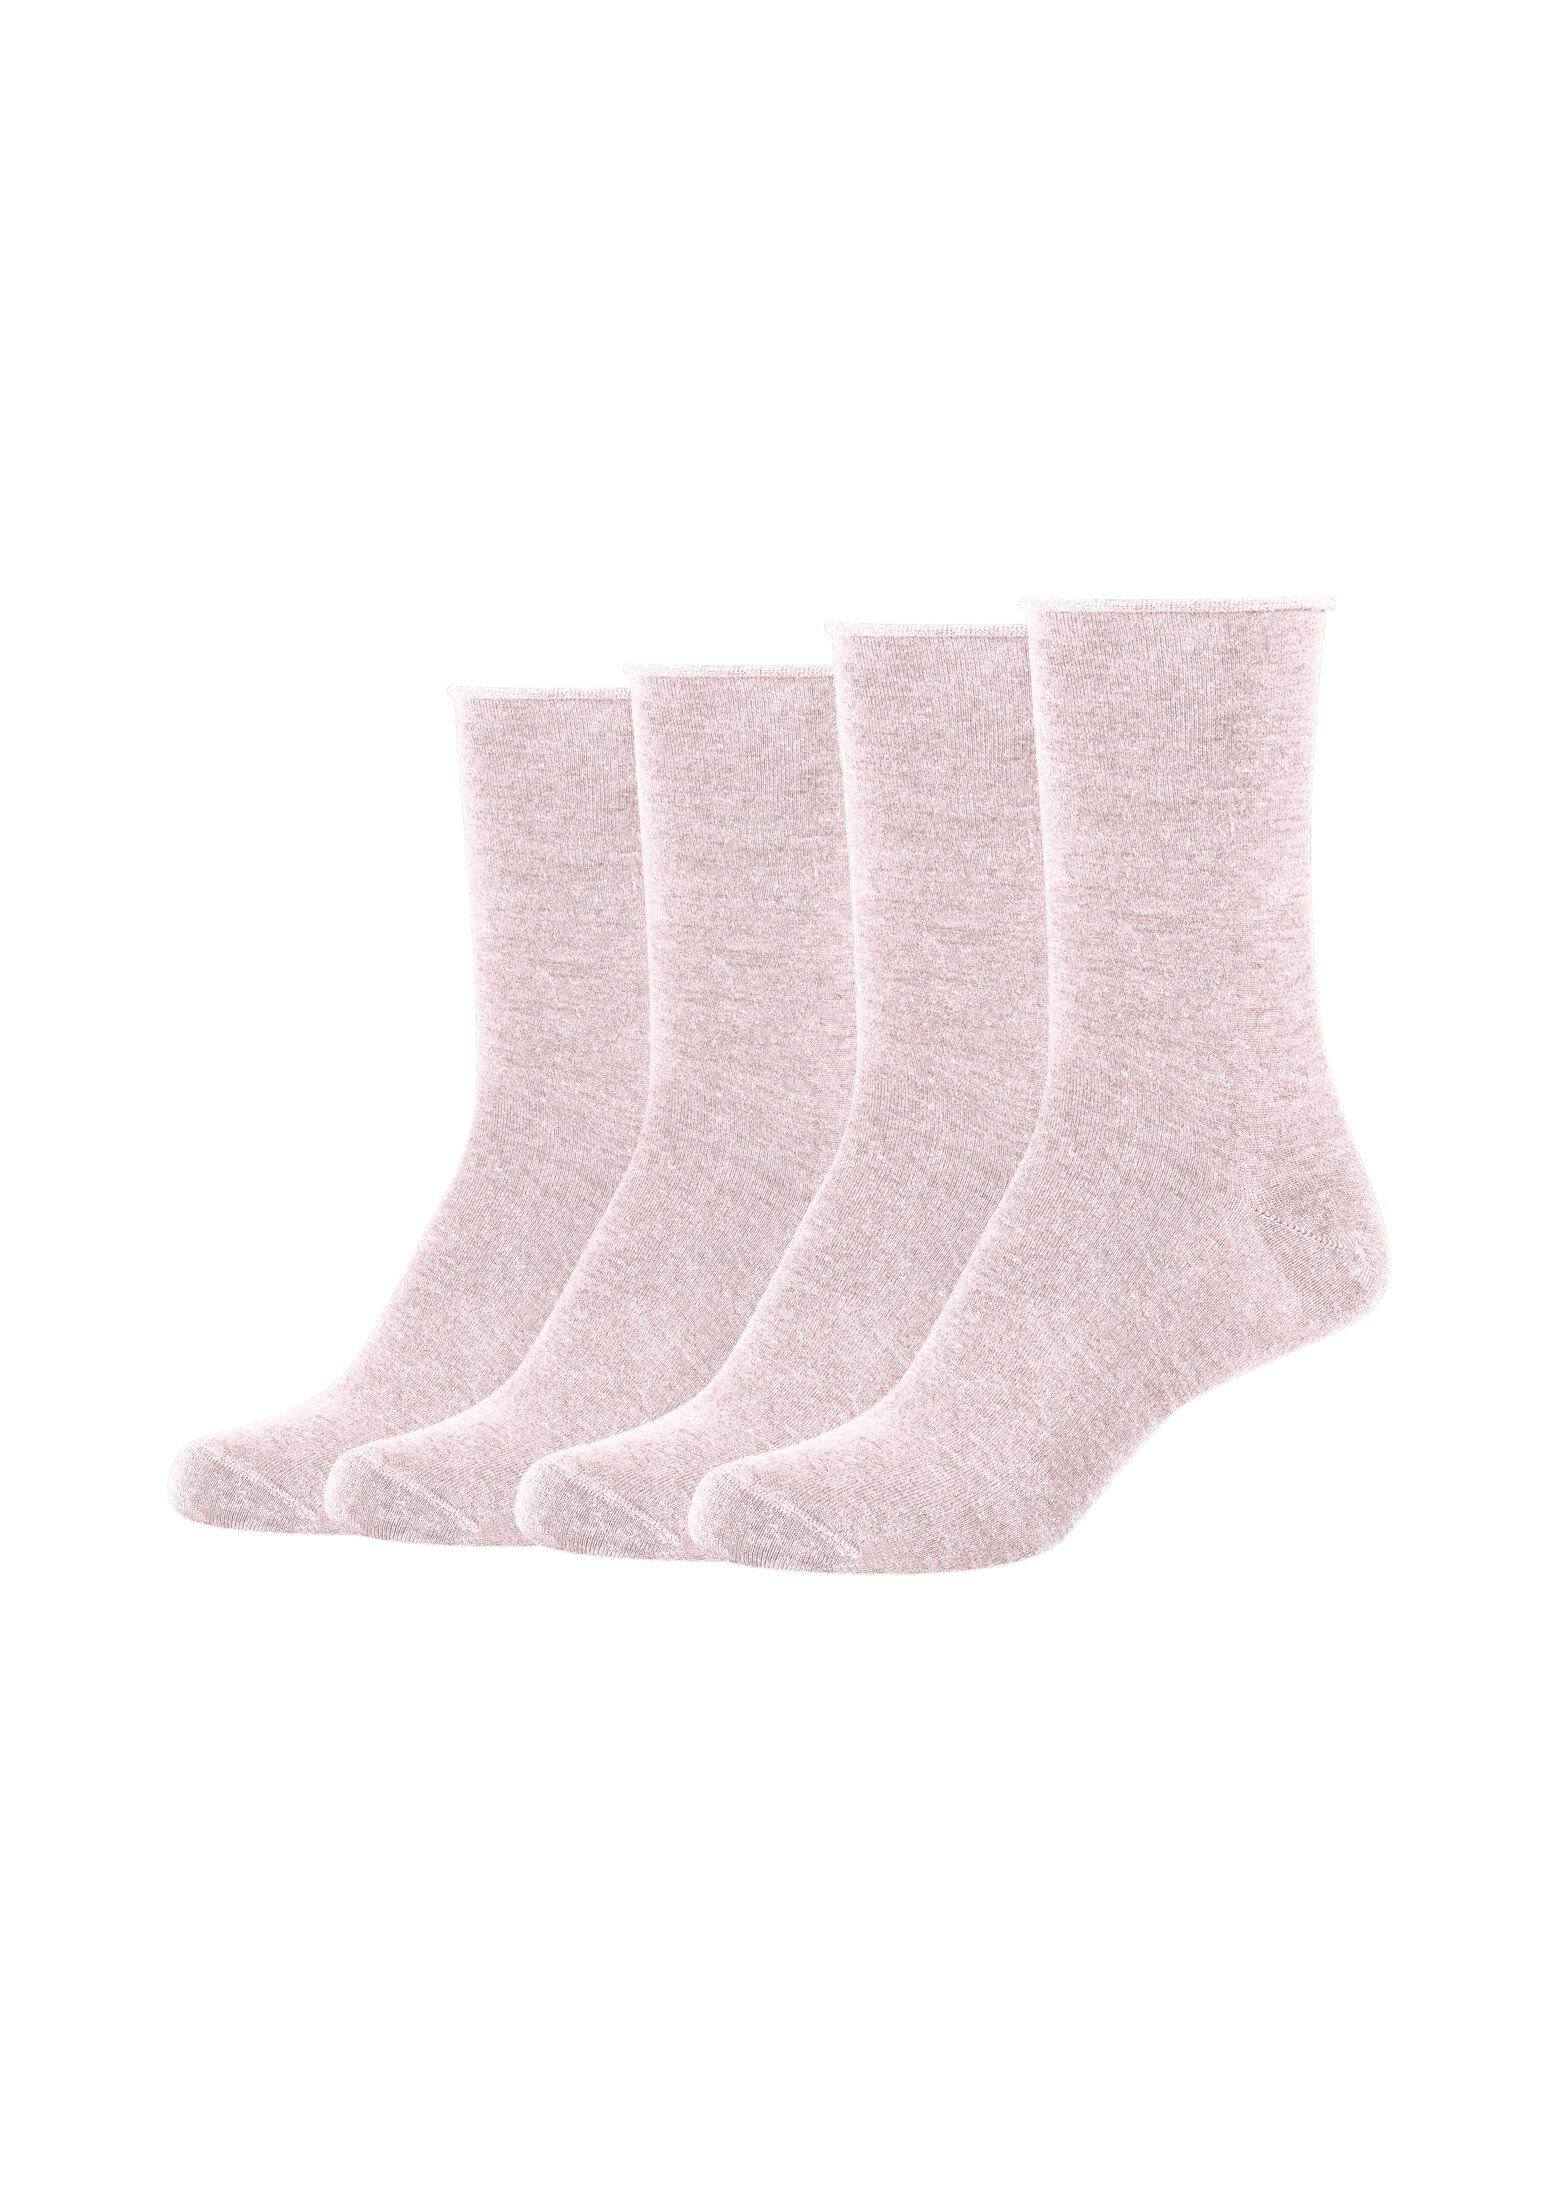 Socken Pack rosé s.Oliver melange 4er Socken